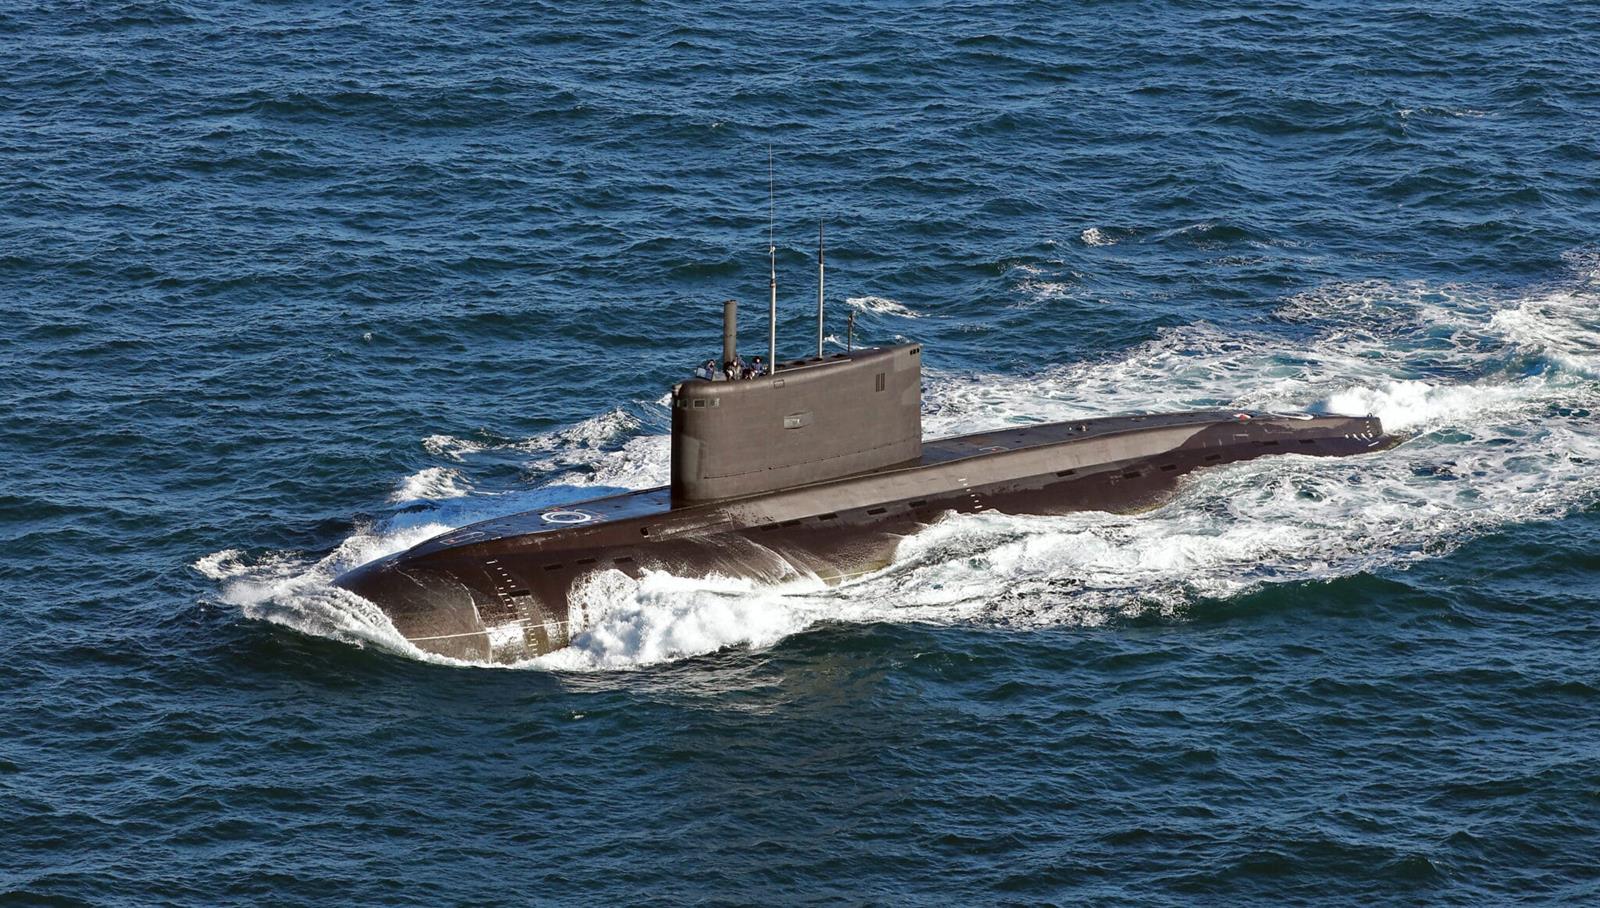 Baza dla atomowych okrętów podwodnych Australii. Wybrano wstępne lokalizacje i wskazano wysokość inwestycji